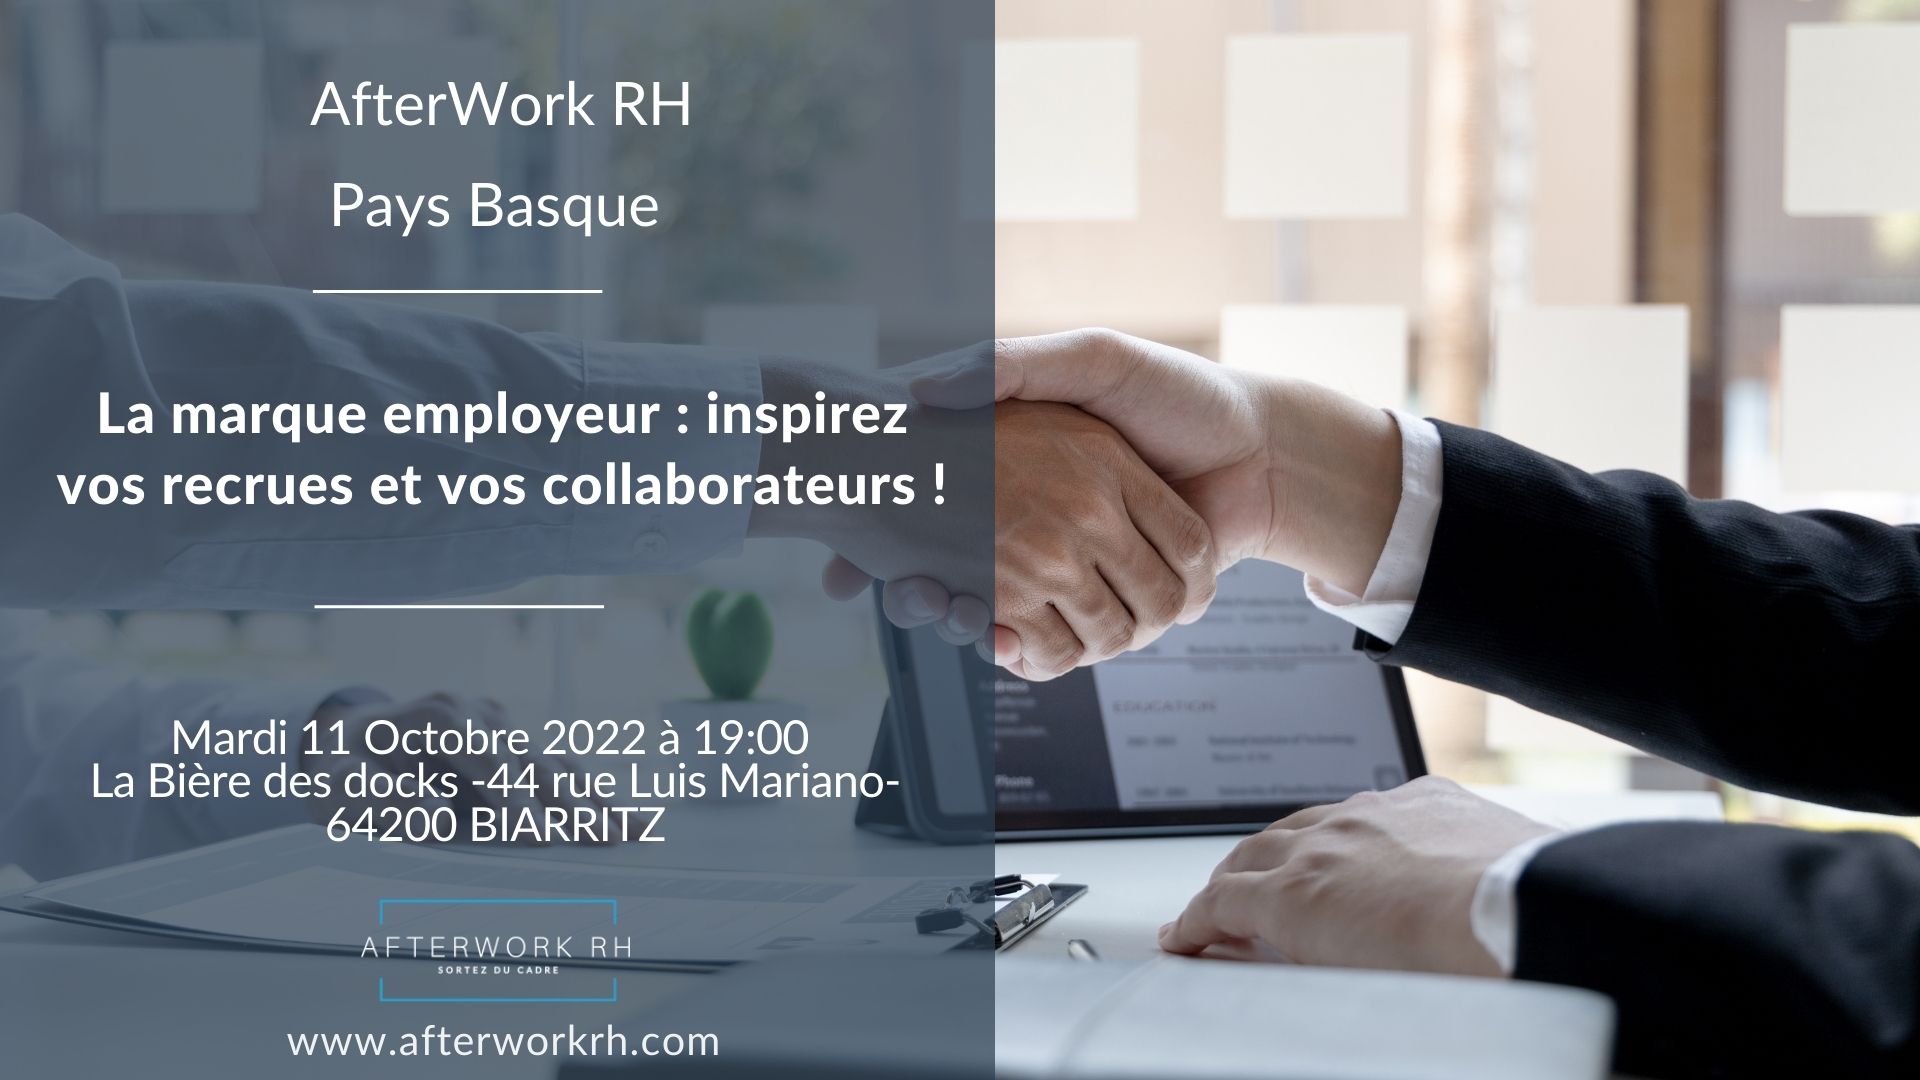 AfterWork RH Pays - Basque - Marque Employeur : Inspirez vos recrues et vos collaborateurs - octobre 2022